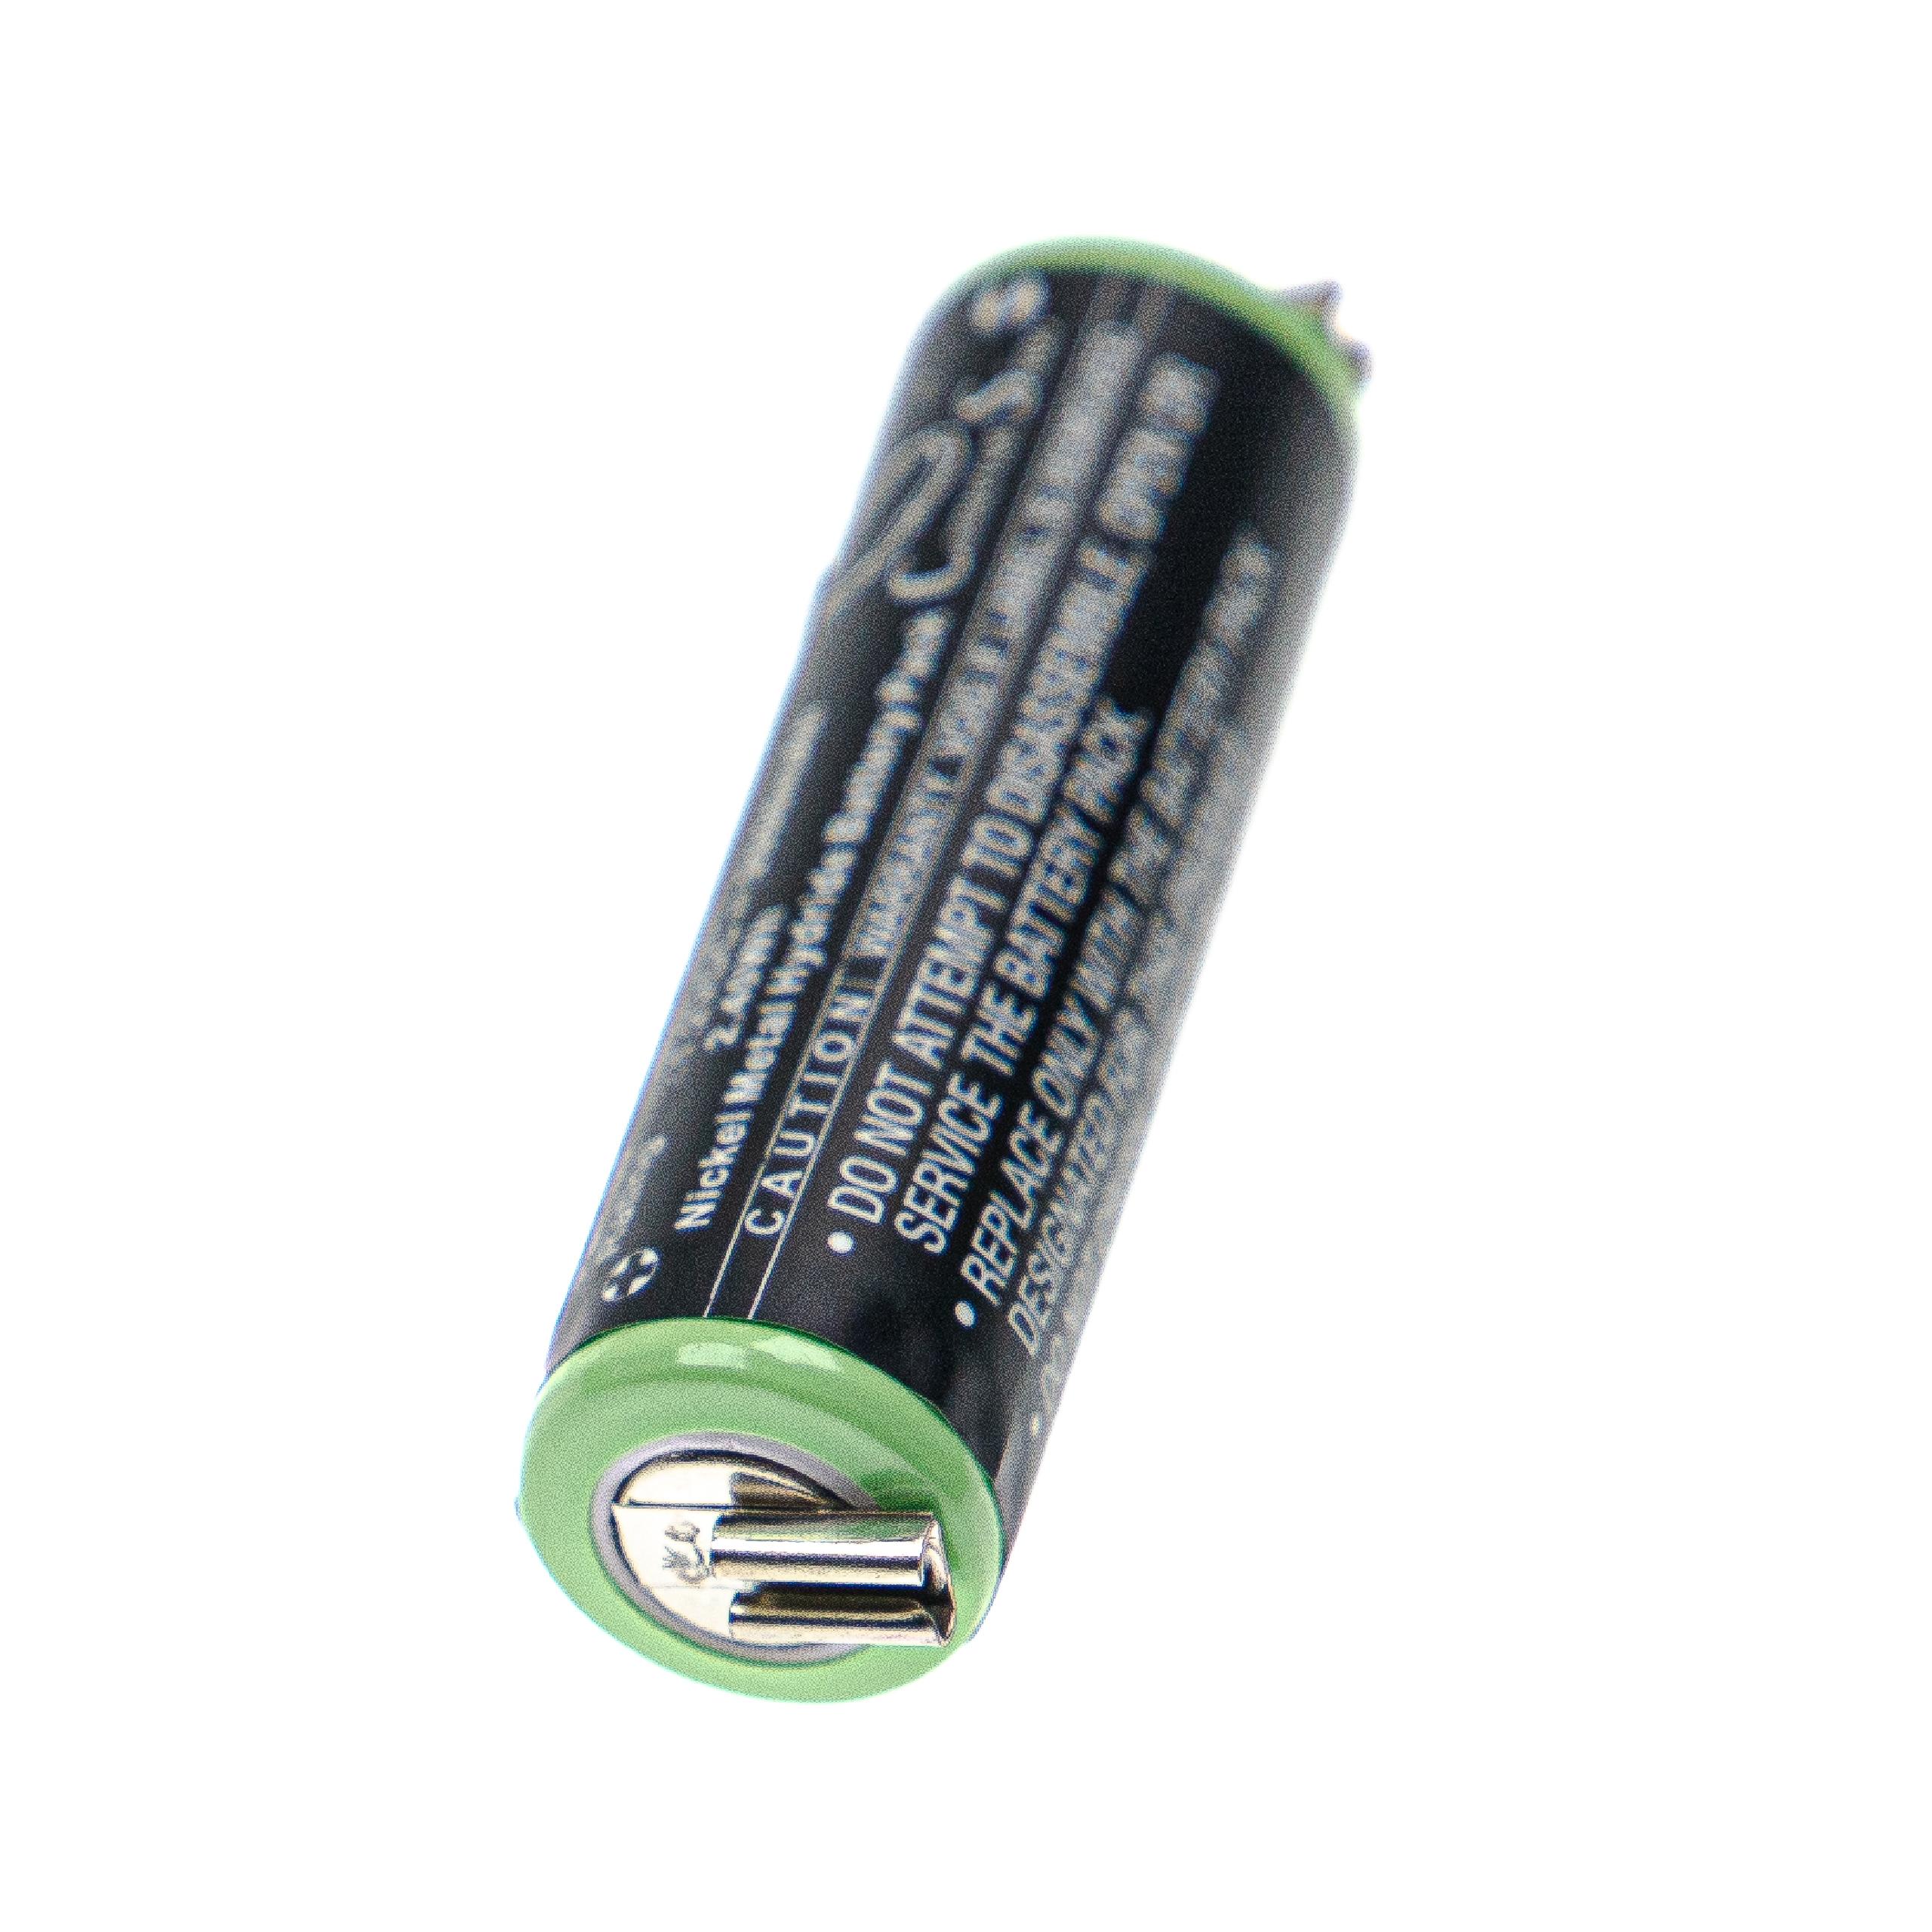 Batterie remplace Moser 1852-7531 pour rasoir électrique - 2000mAh 1,2V NiMH